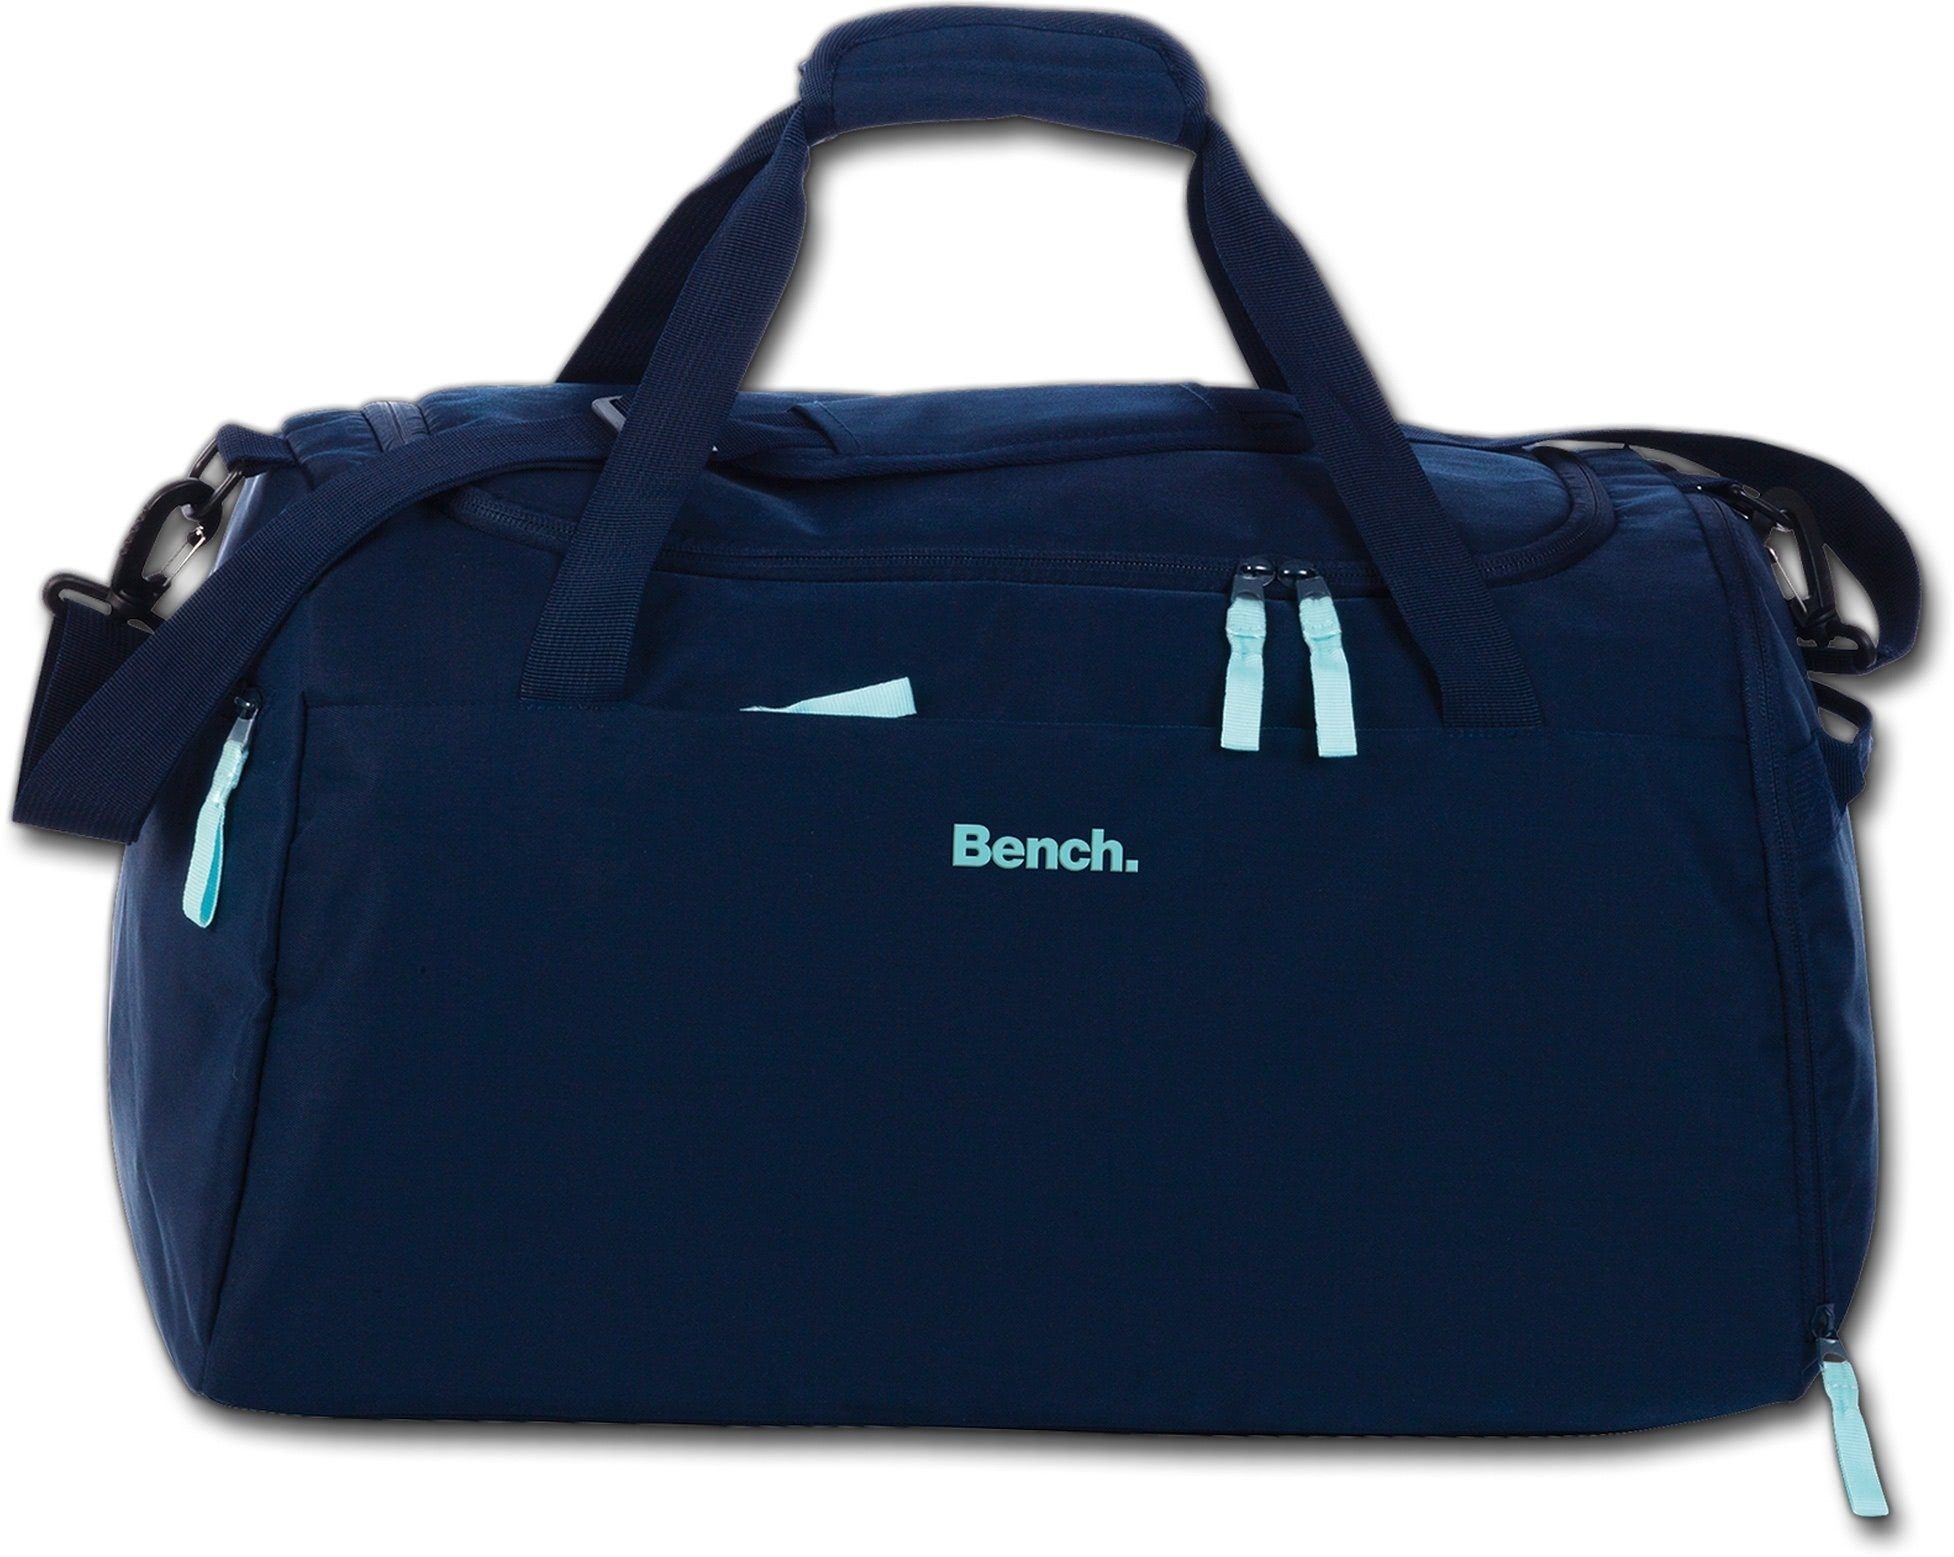 Nylon Nylon uni Damen blau, Bench. Sporttasche Damen Bench blau, groß Tasche Sporttasche 50x30x29cm,